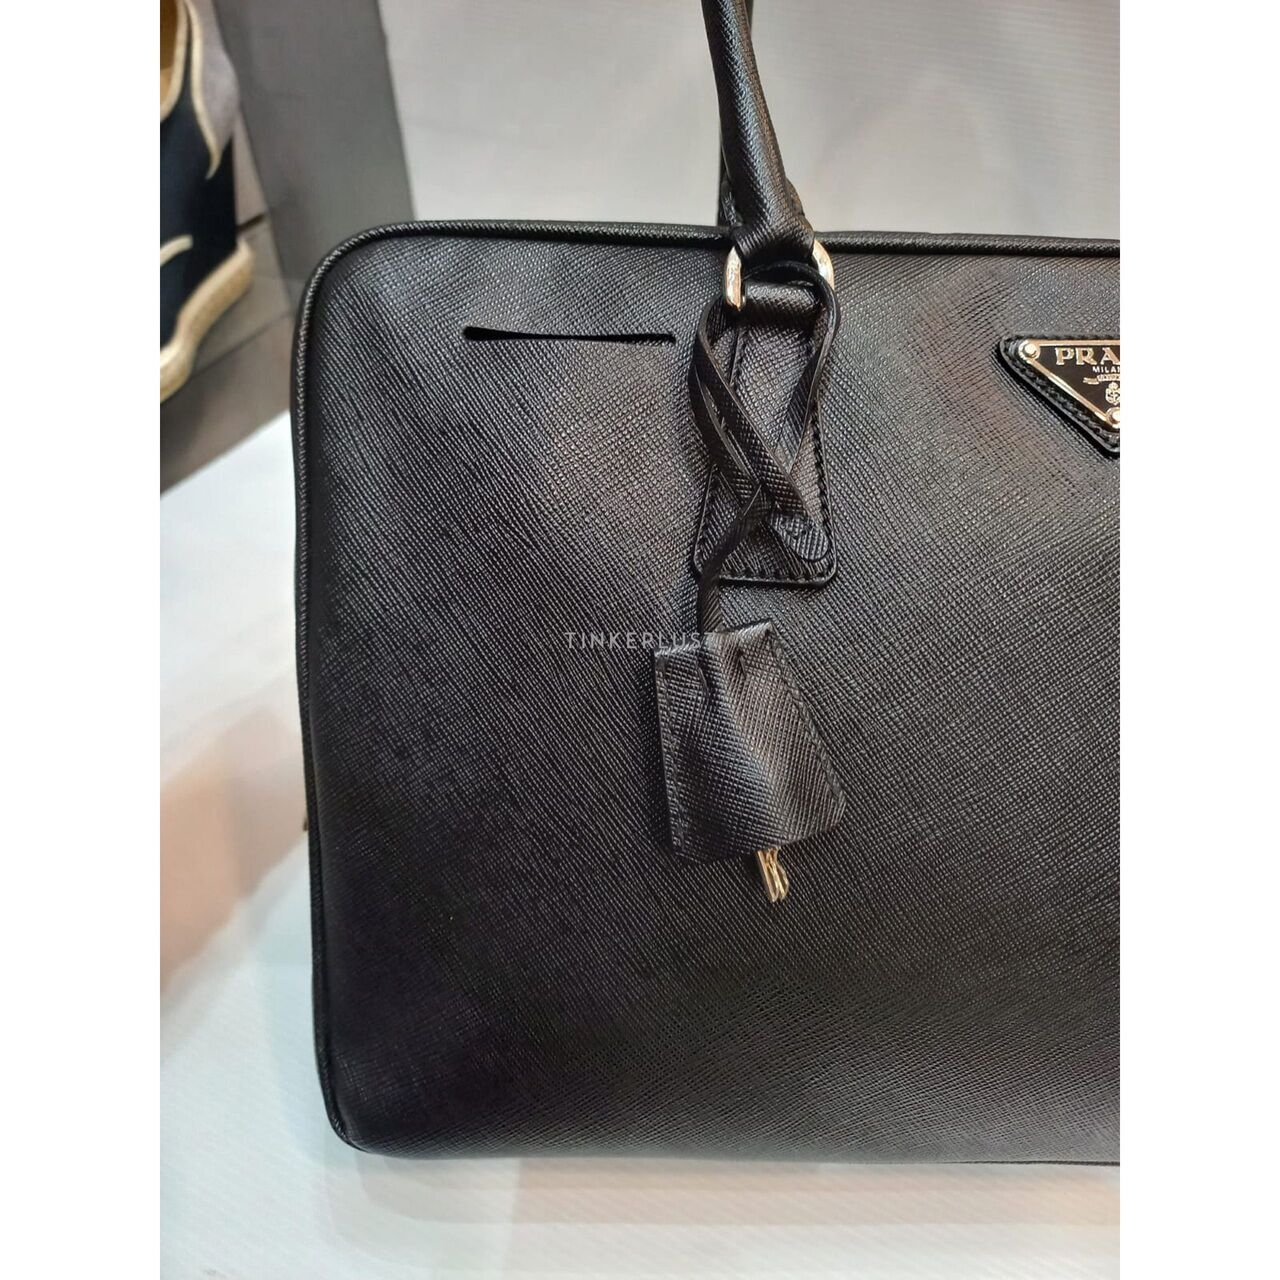 Prada Duffle Black Saffiano 35 Handbag